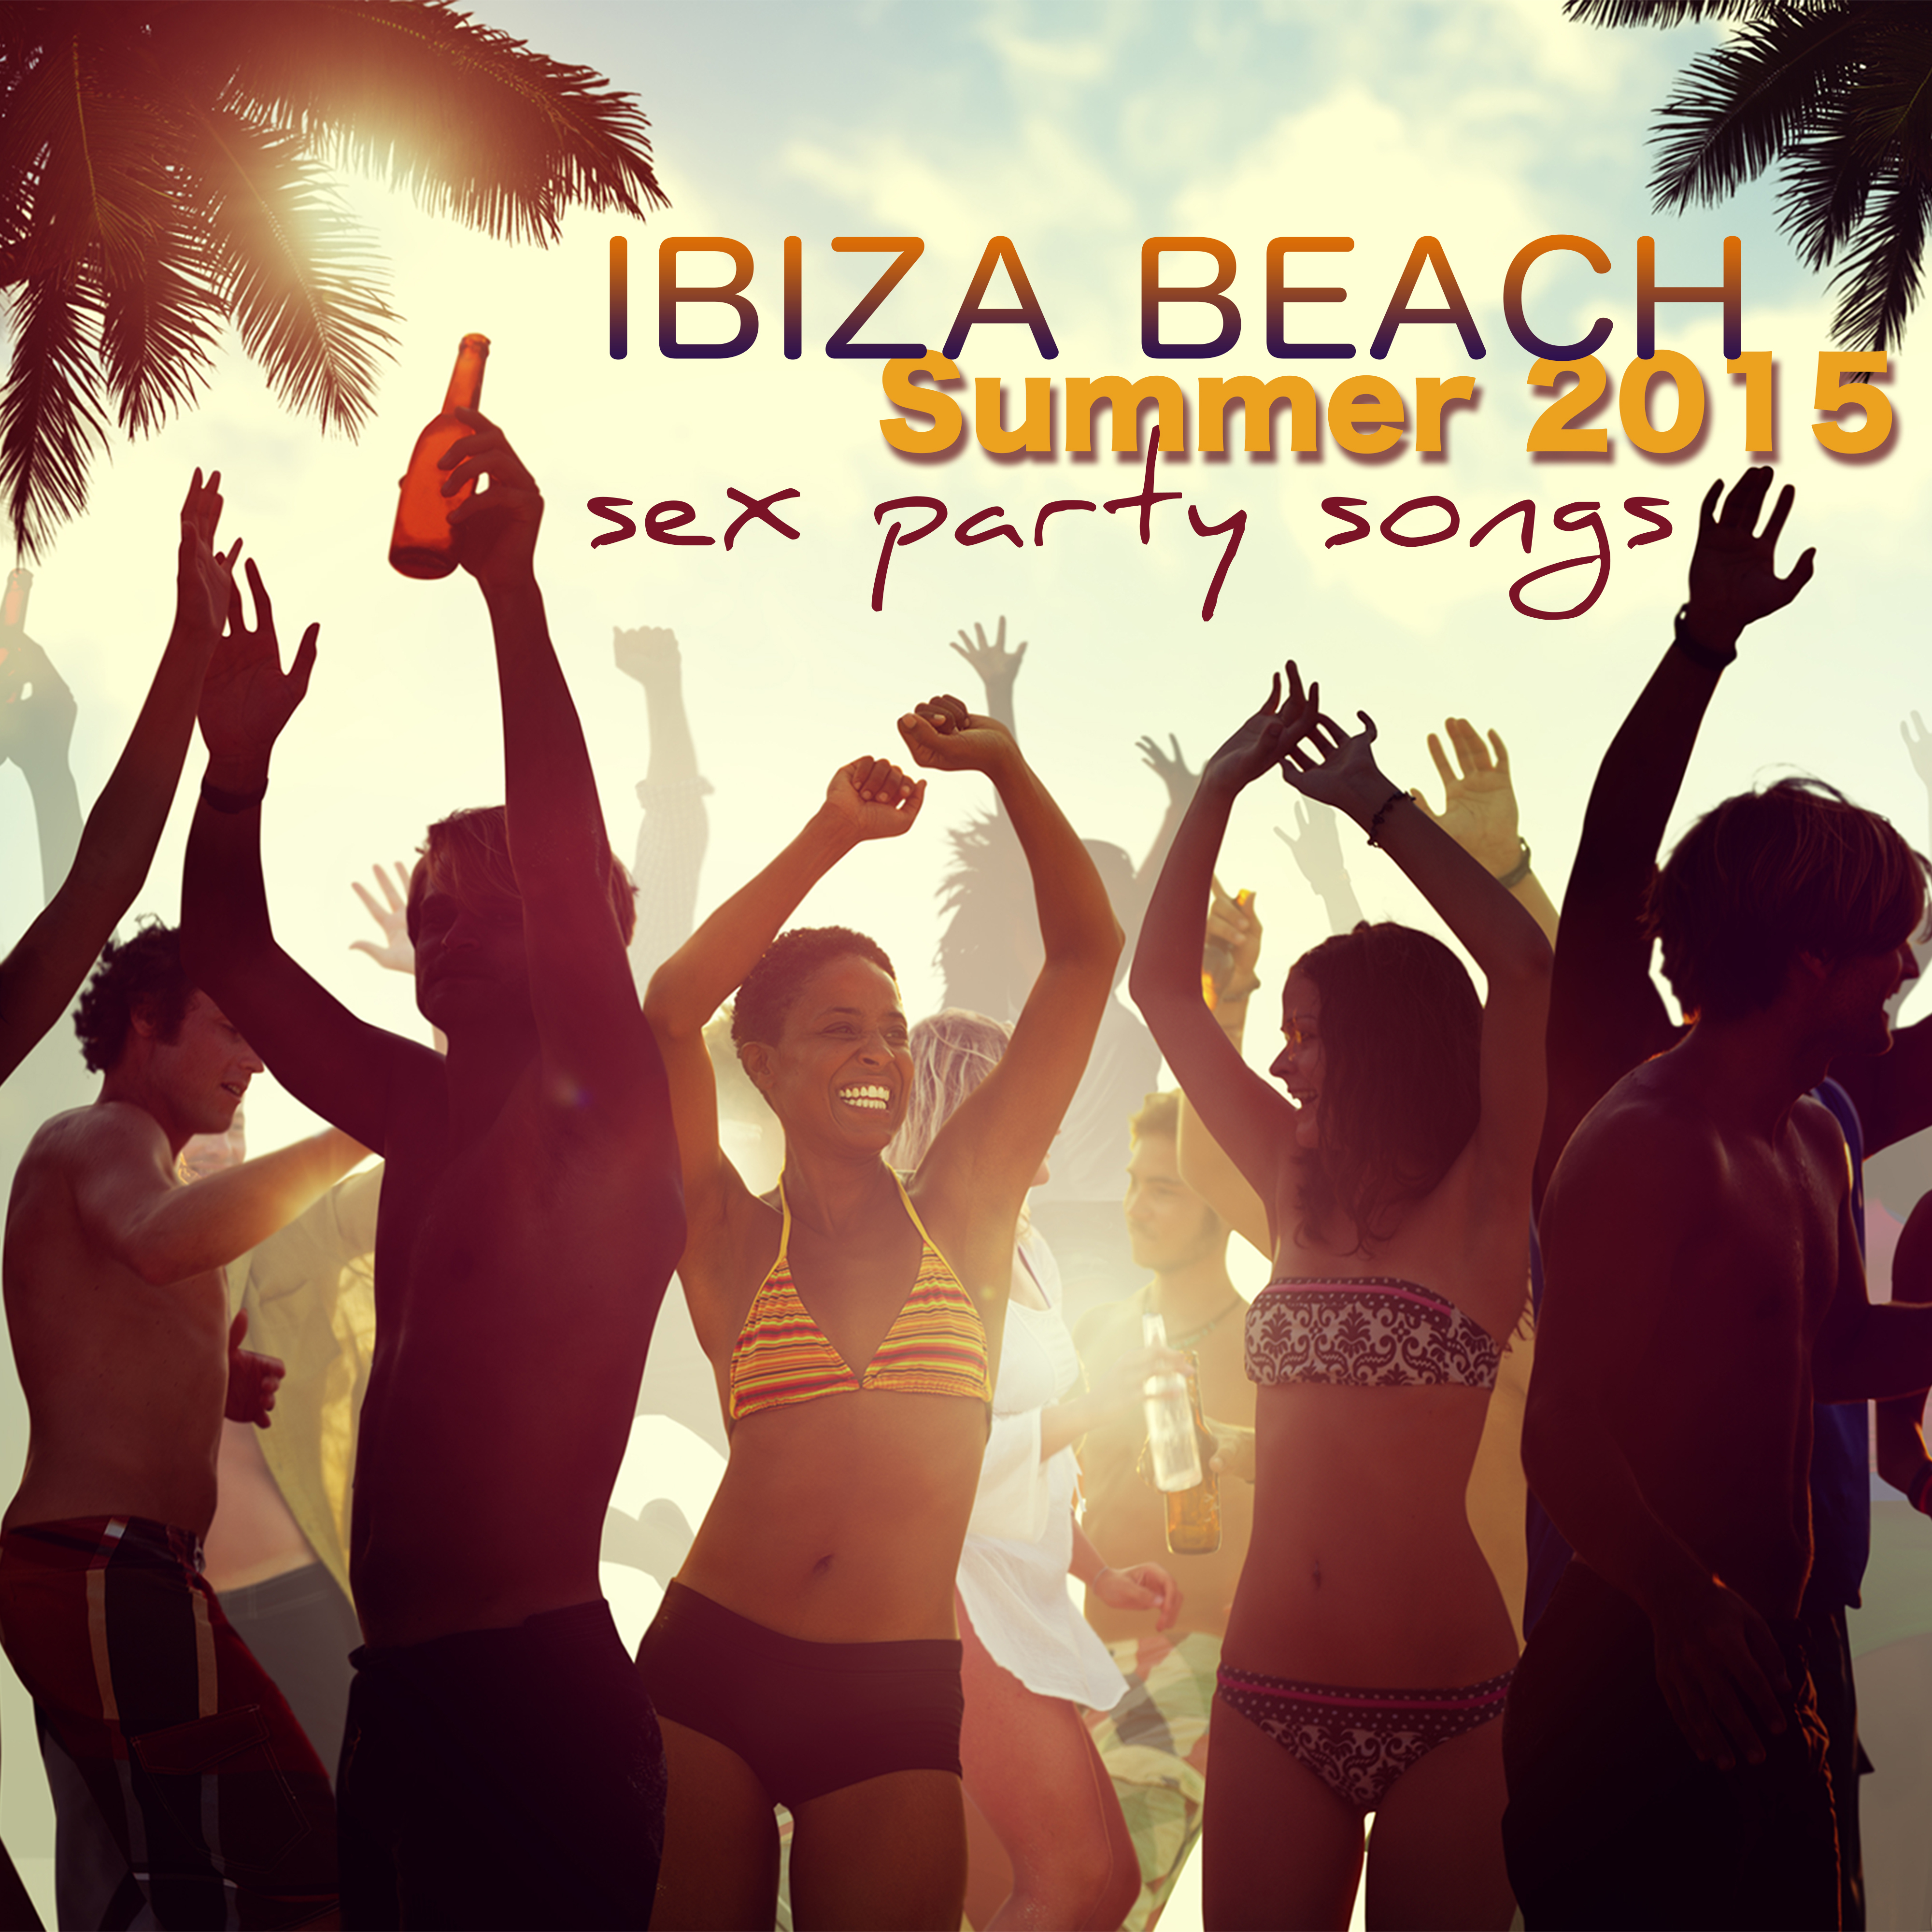 Ibiza Beach *** Party Songs Summer 2015